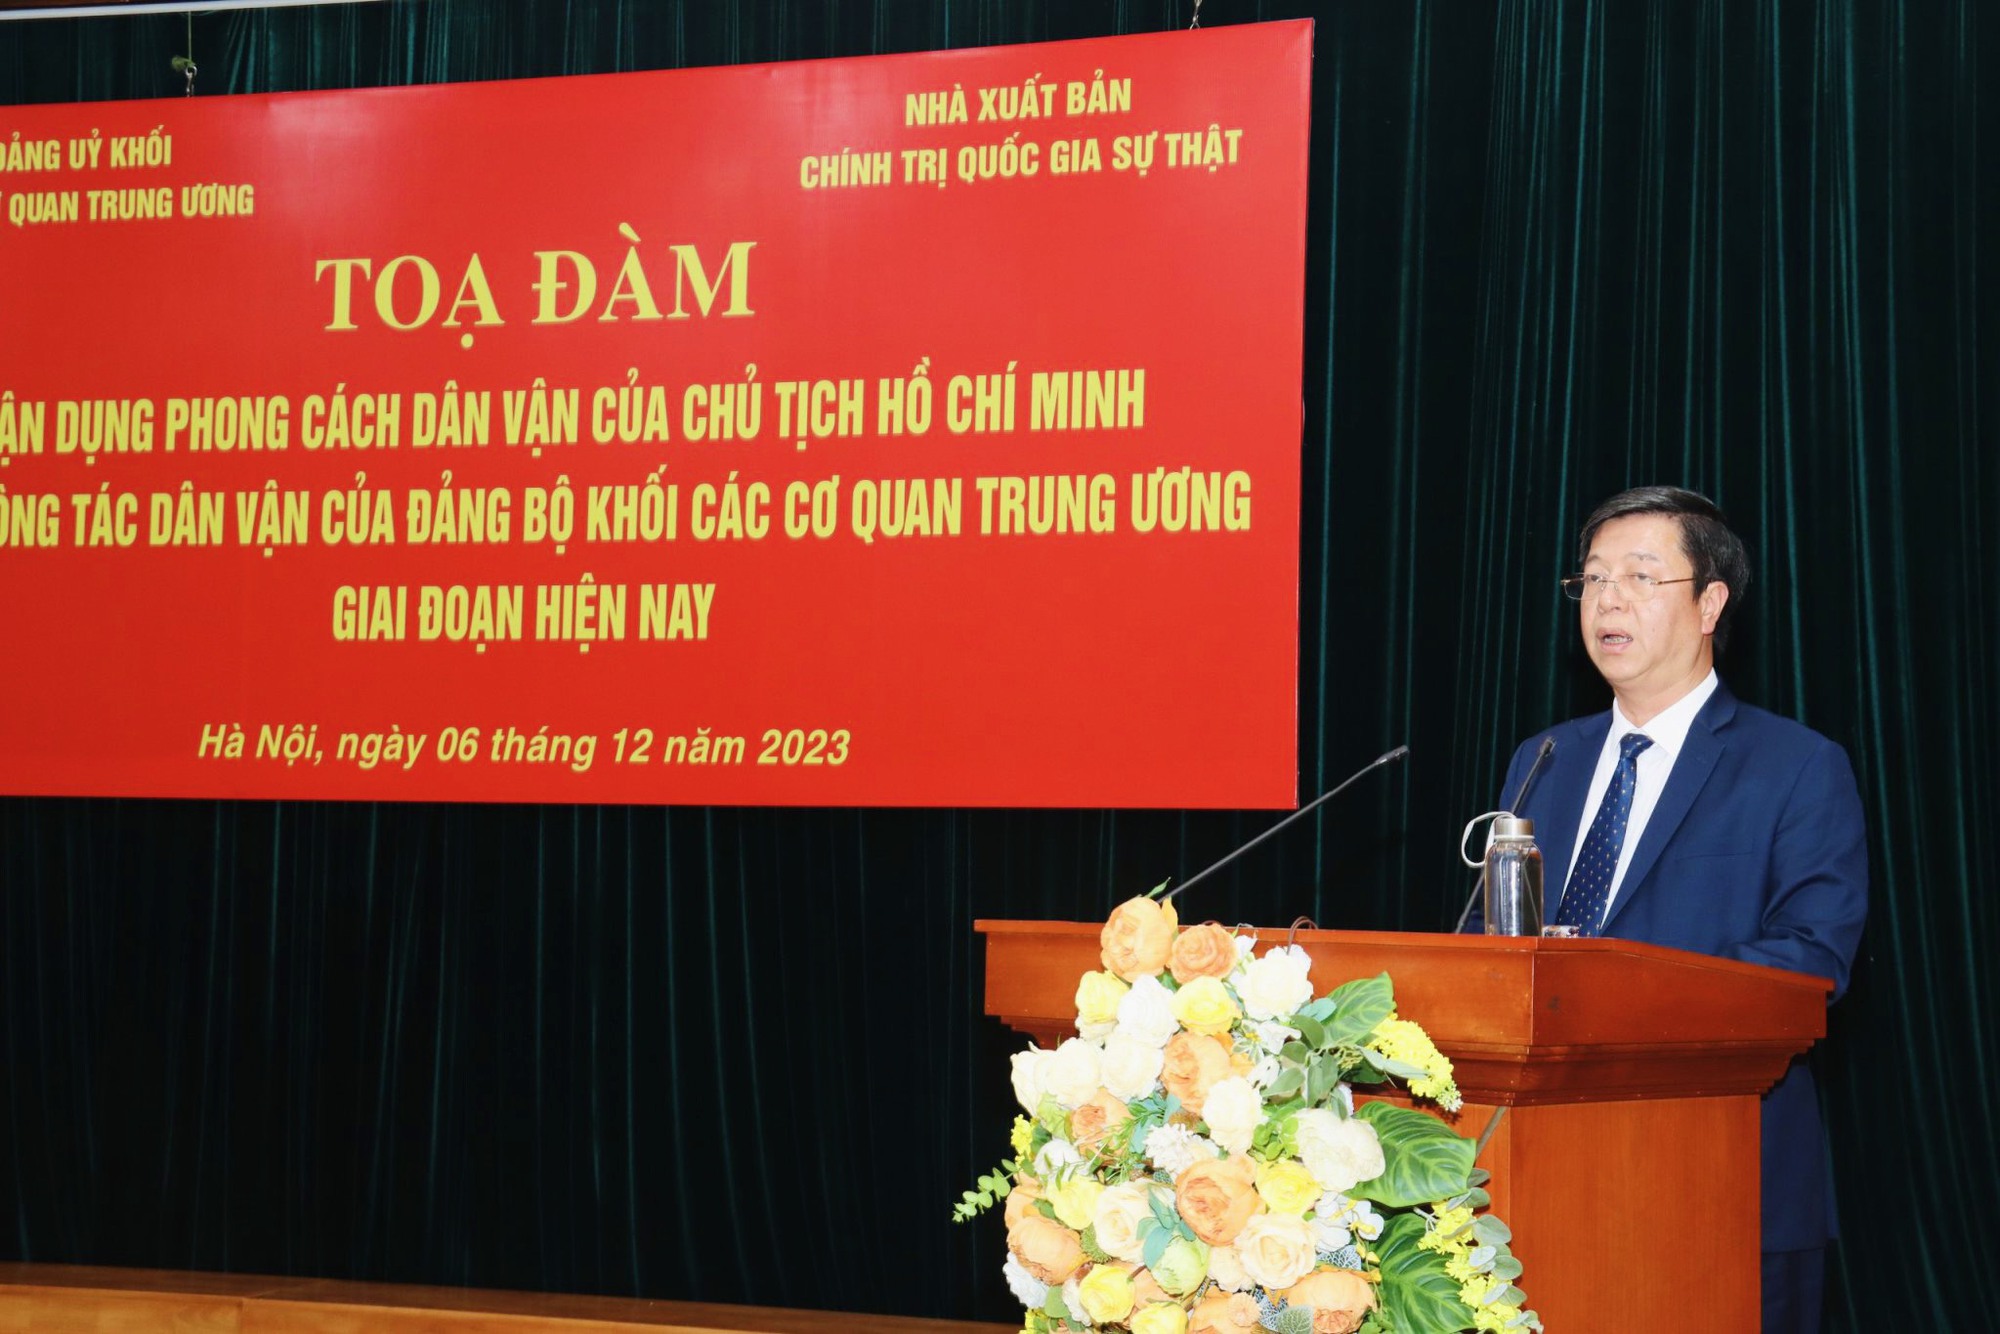 Đảng bộ Khối các cơ quan Trung ương: Vận dụng phong cách dân vận của Chủ tịch Hồ Chí Minh  - Ảnh 3.